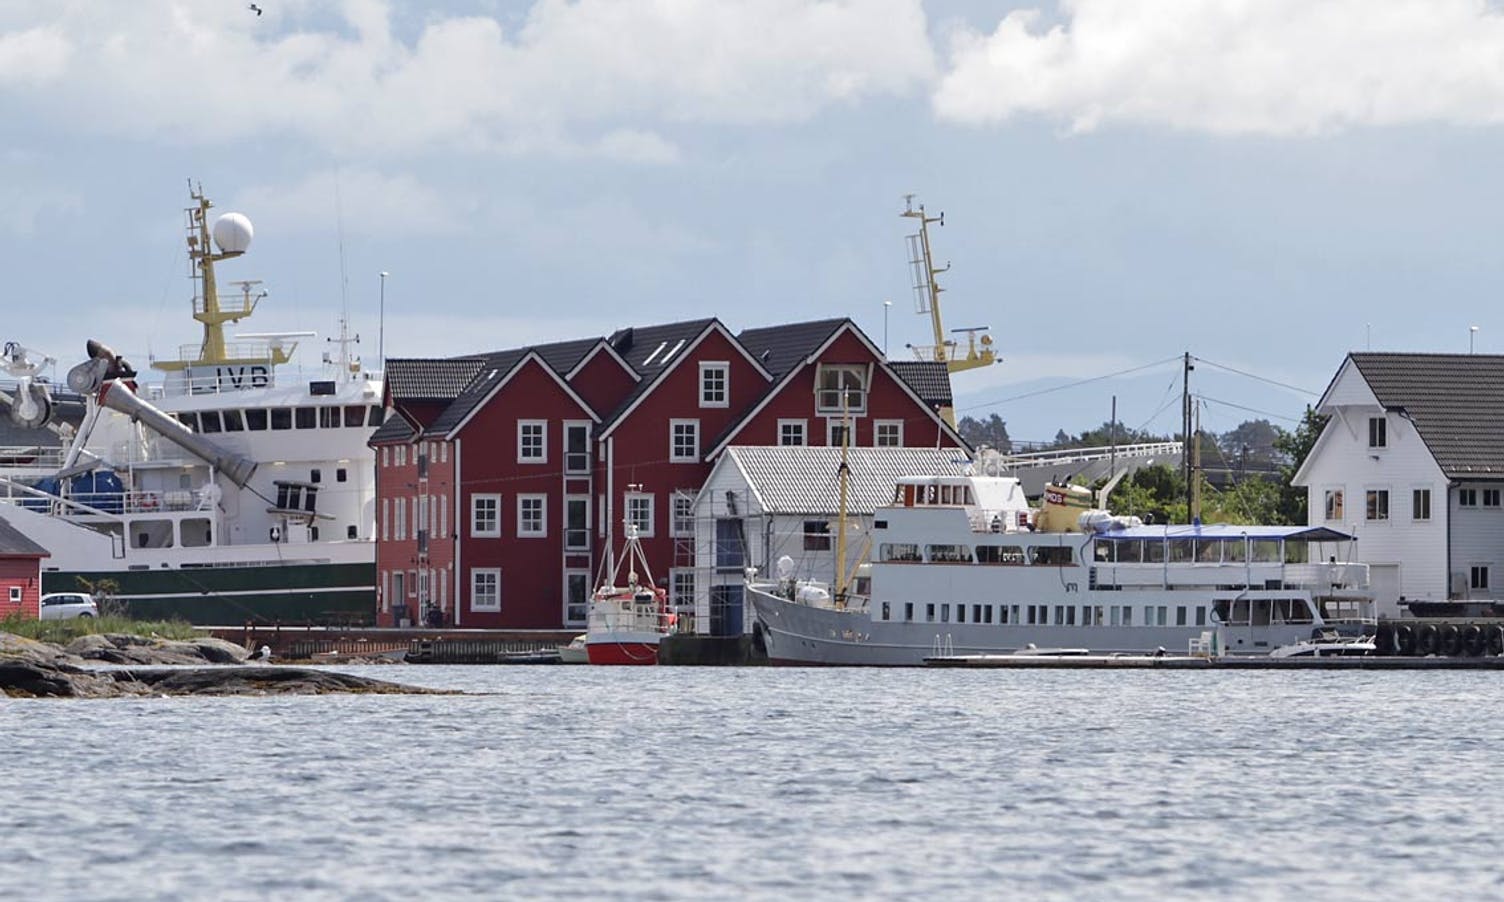 MS Midthordland har fast kaiplass nær galleriet. Laurdag forhaler veteranbåten bort til Hargun-naustet. (Foto: Kjetil Vasby Bruarøy)